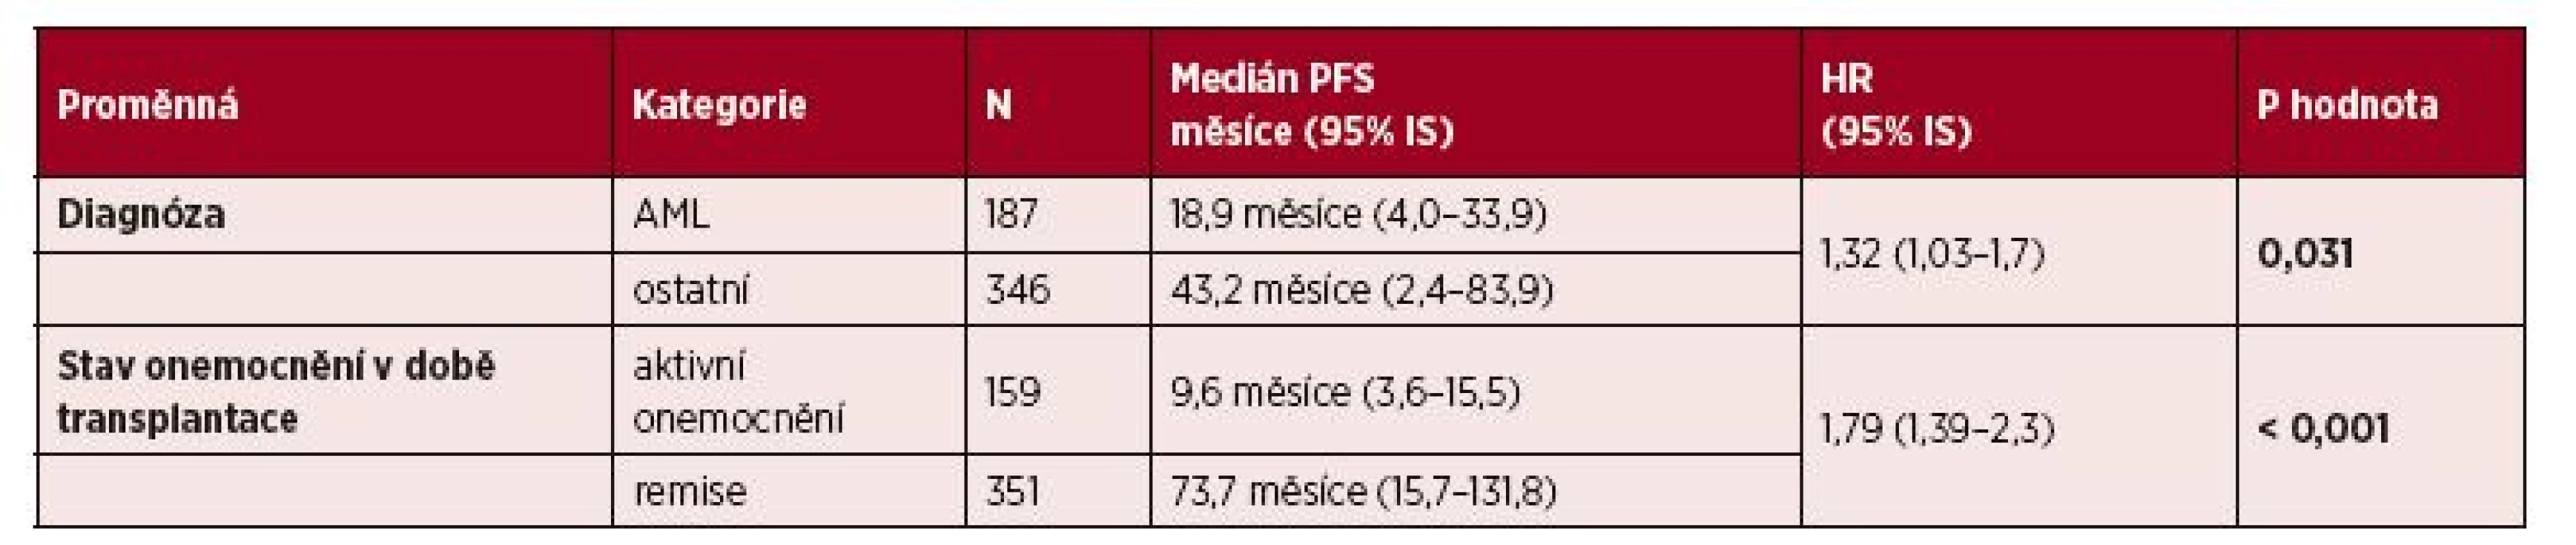 Vliv vybraných klinických parametrů na PFS: multivariční analýza